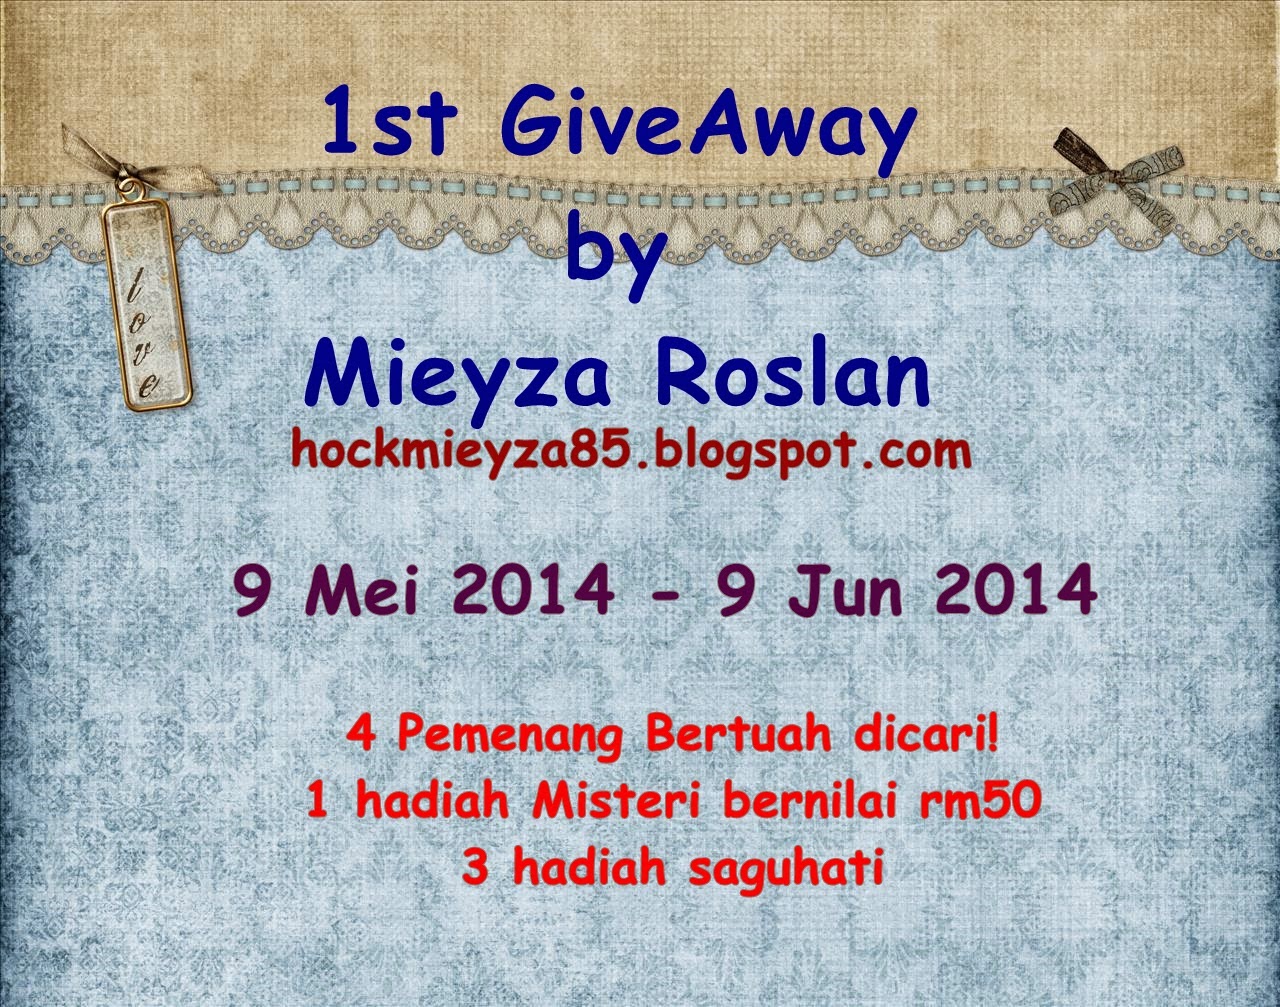 http://hockmieyza85.blogspot.com/2014/05/1st-give-away-by-mieyza-roslan.html